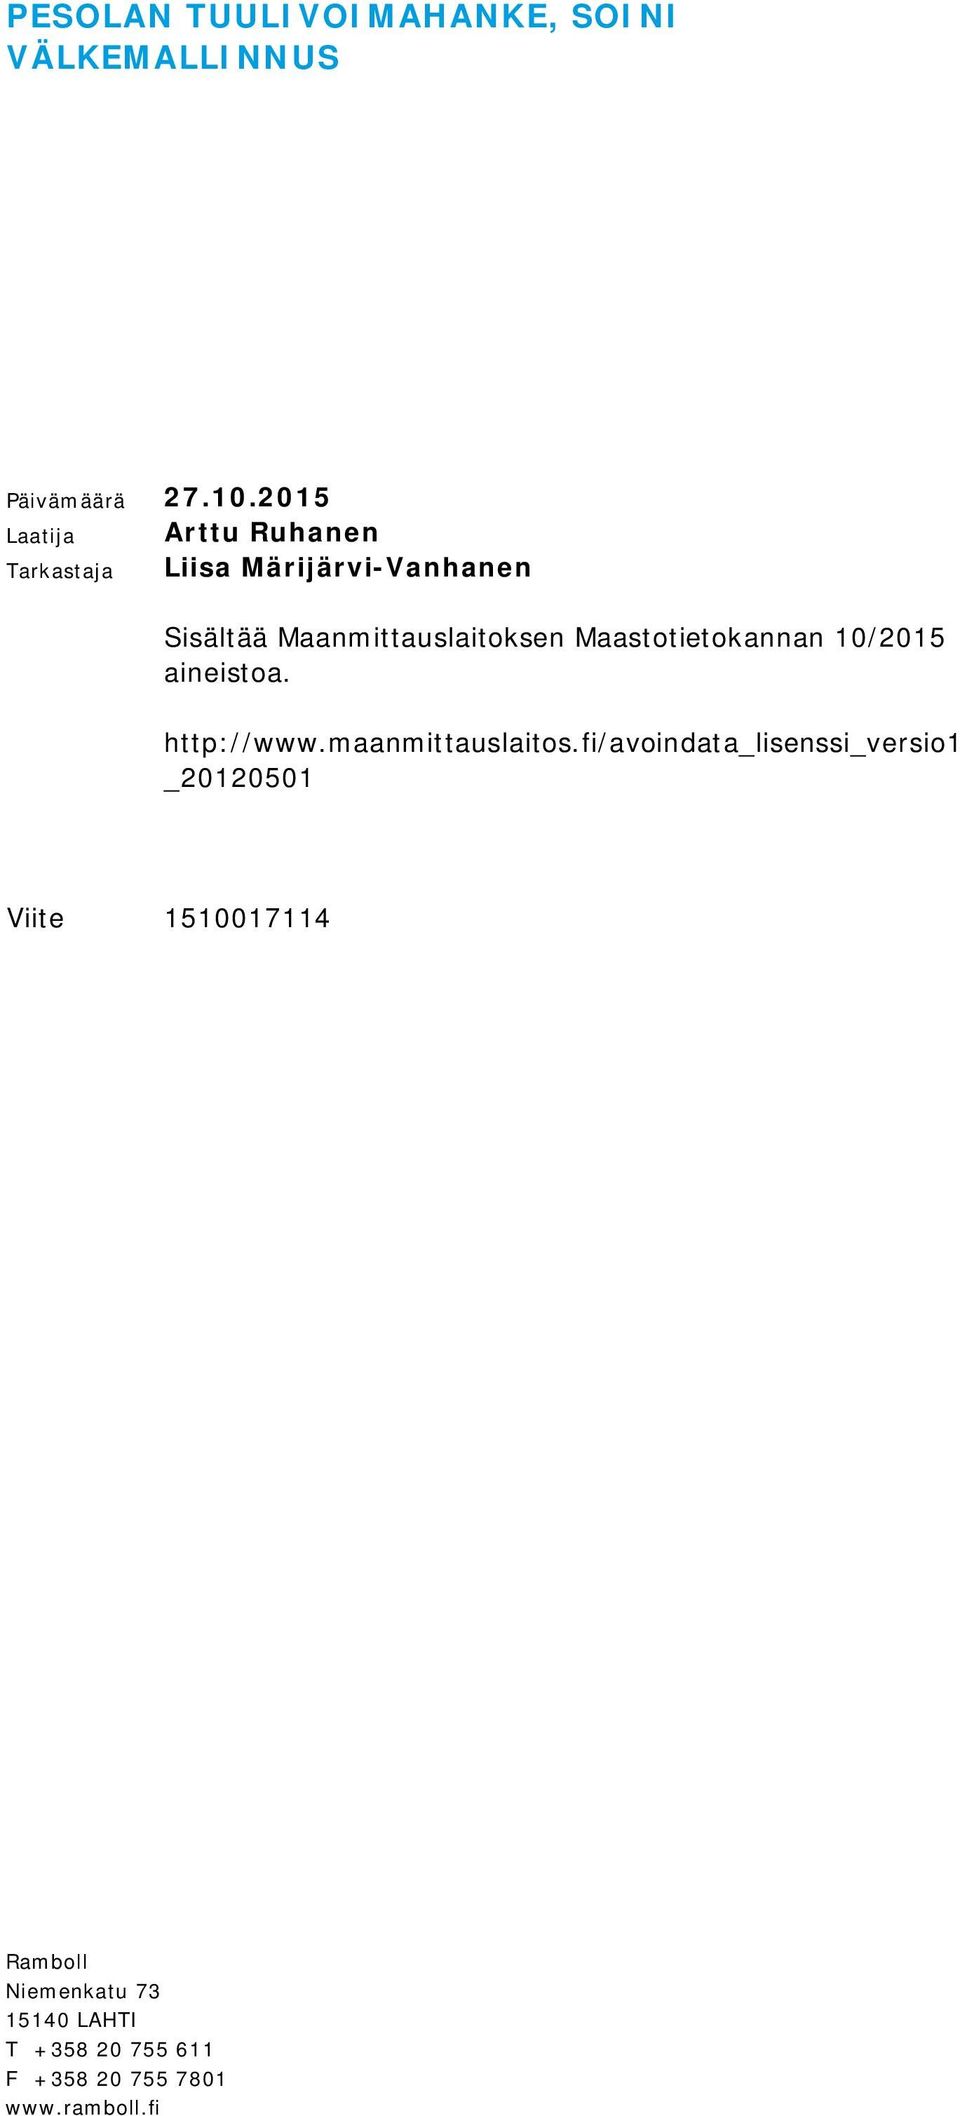 Maanmittauslaitoksen Maastotietokannan 10/2015 aineistoa. http://www.maanmittauslaitos.